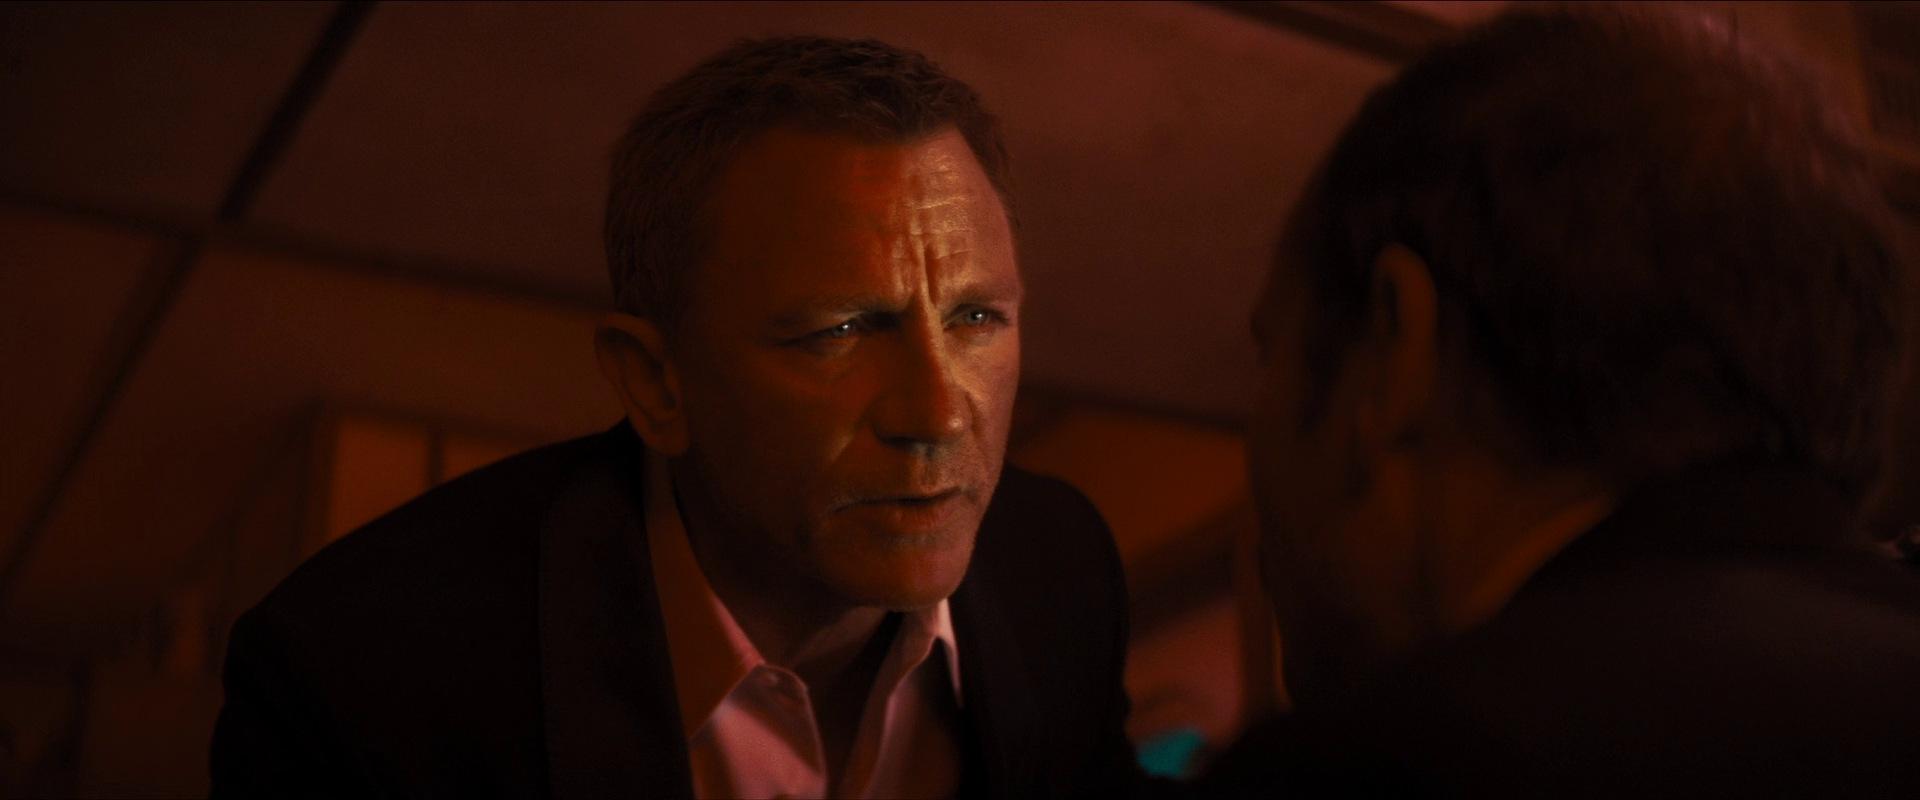 De James Bond-film die we graag willen zien, maar nooit krijgen